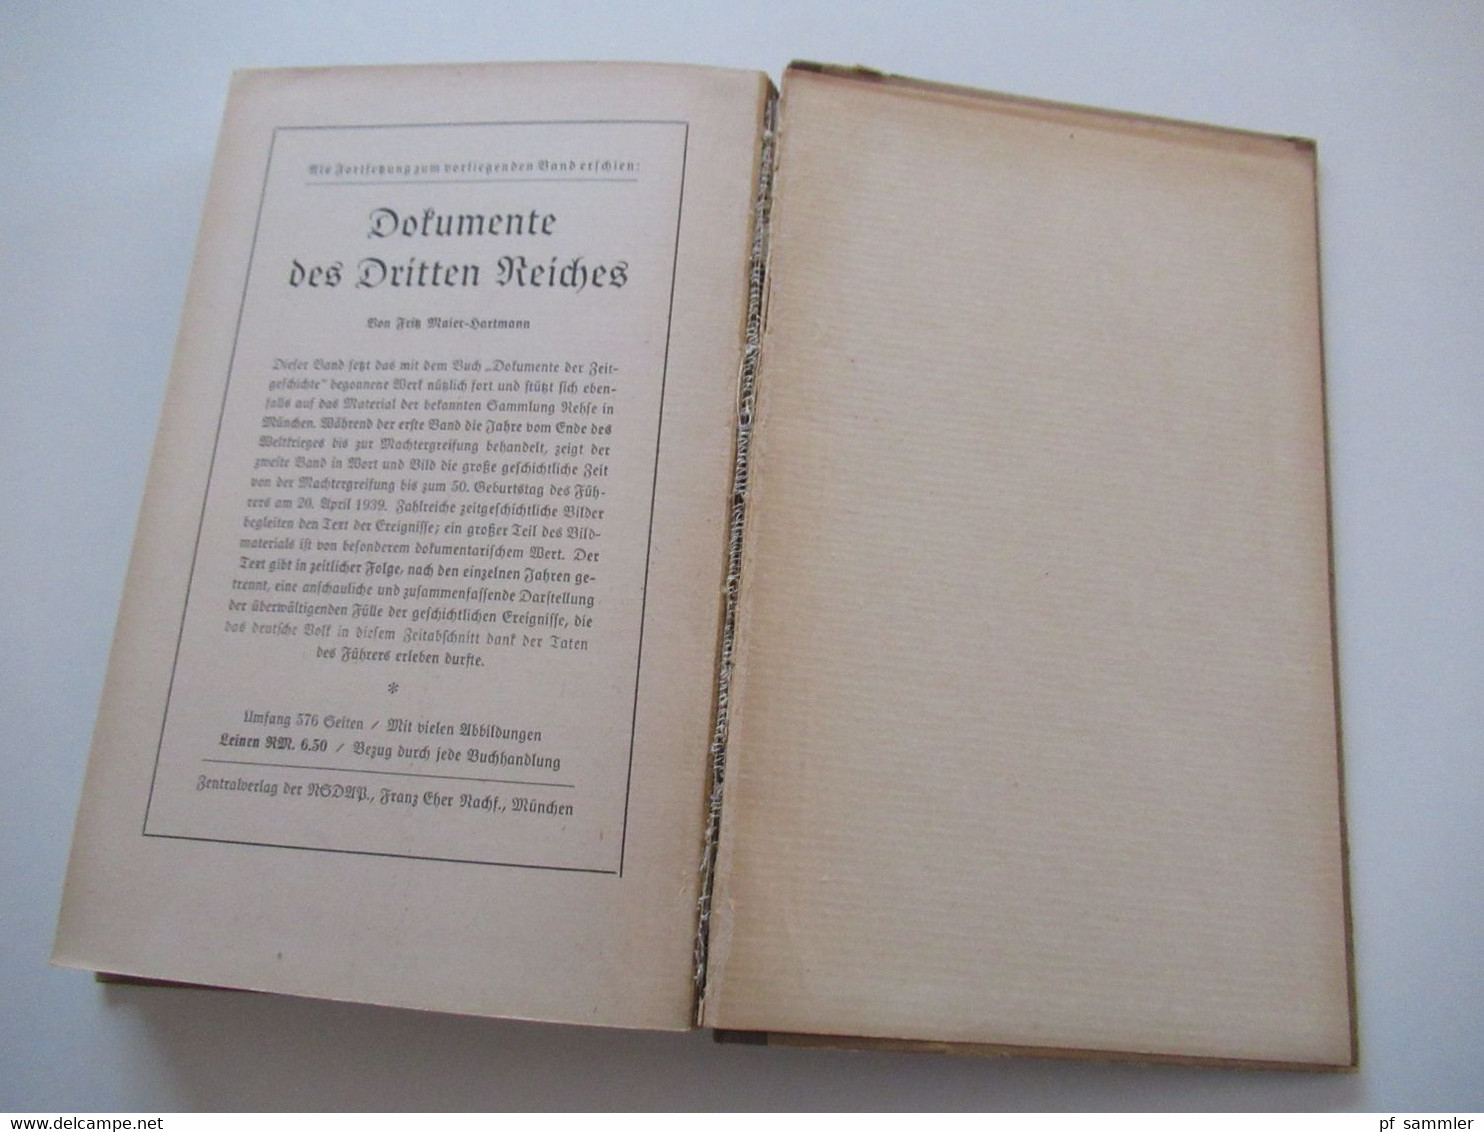 Zentralverlag der NSDAP München 1943 Dokumente des Dritten Reiches 1. Band von Fritz Maier Hartmann / NS Propaganda